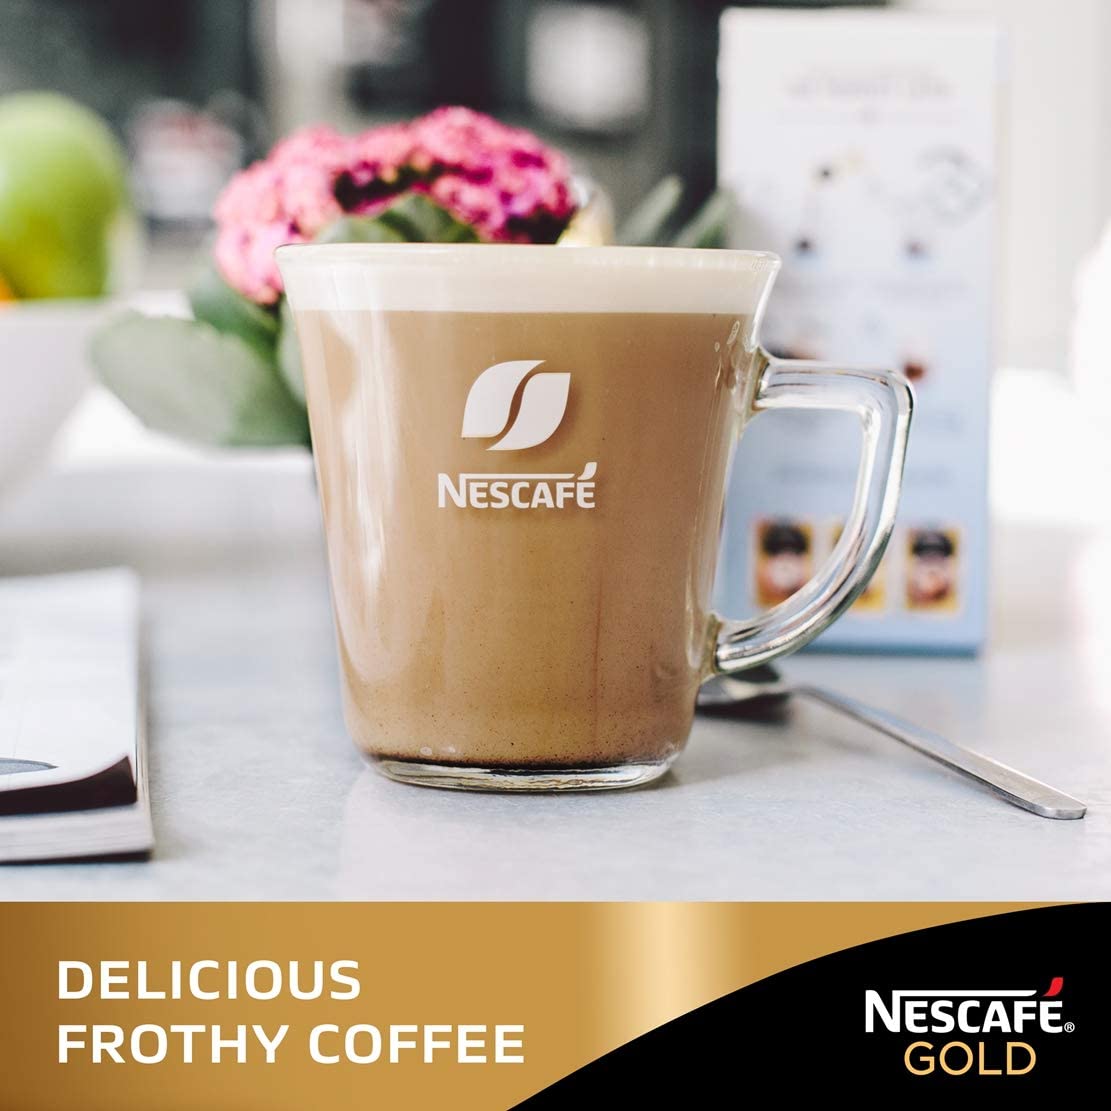 Nescafe Gold Latte Macchiato 1kg